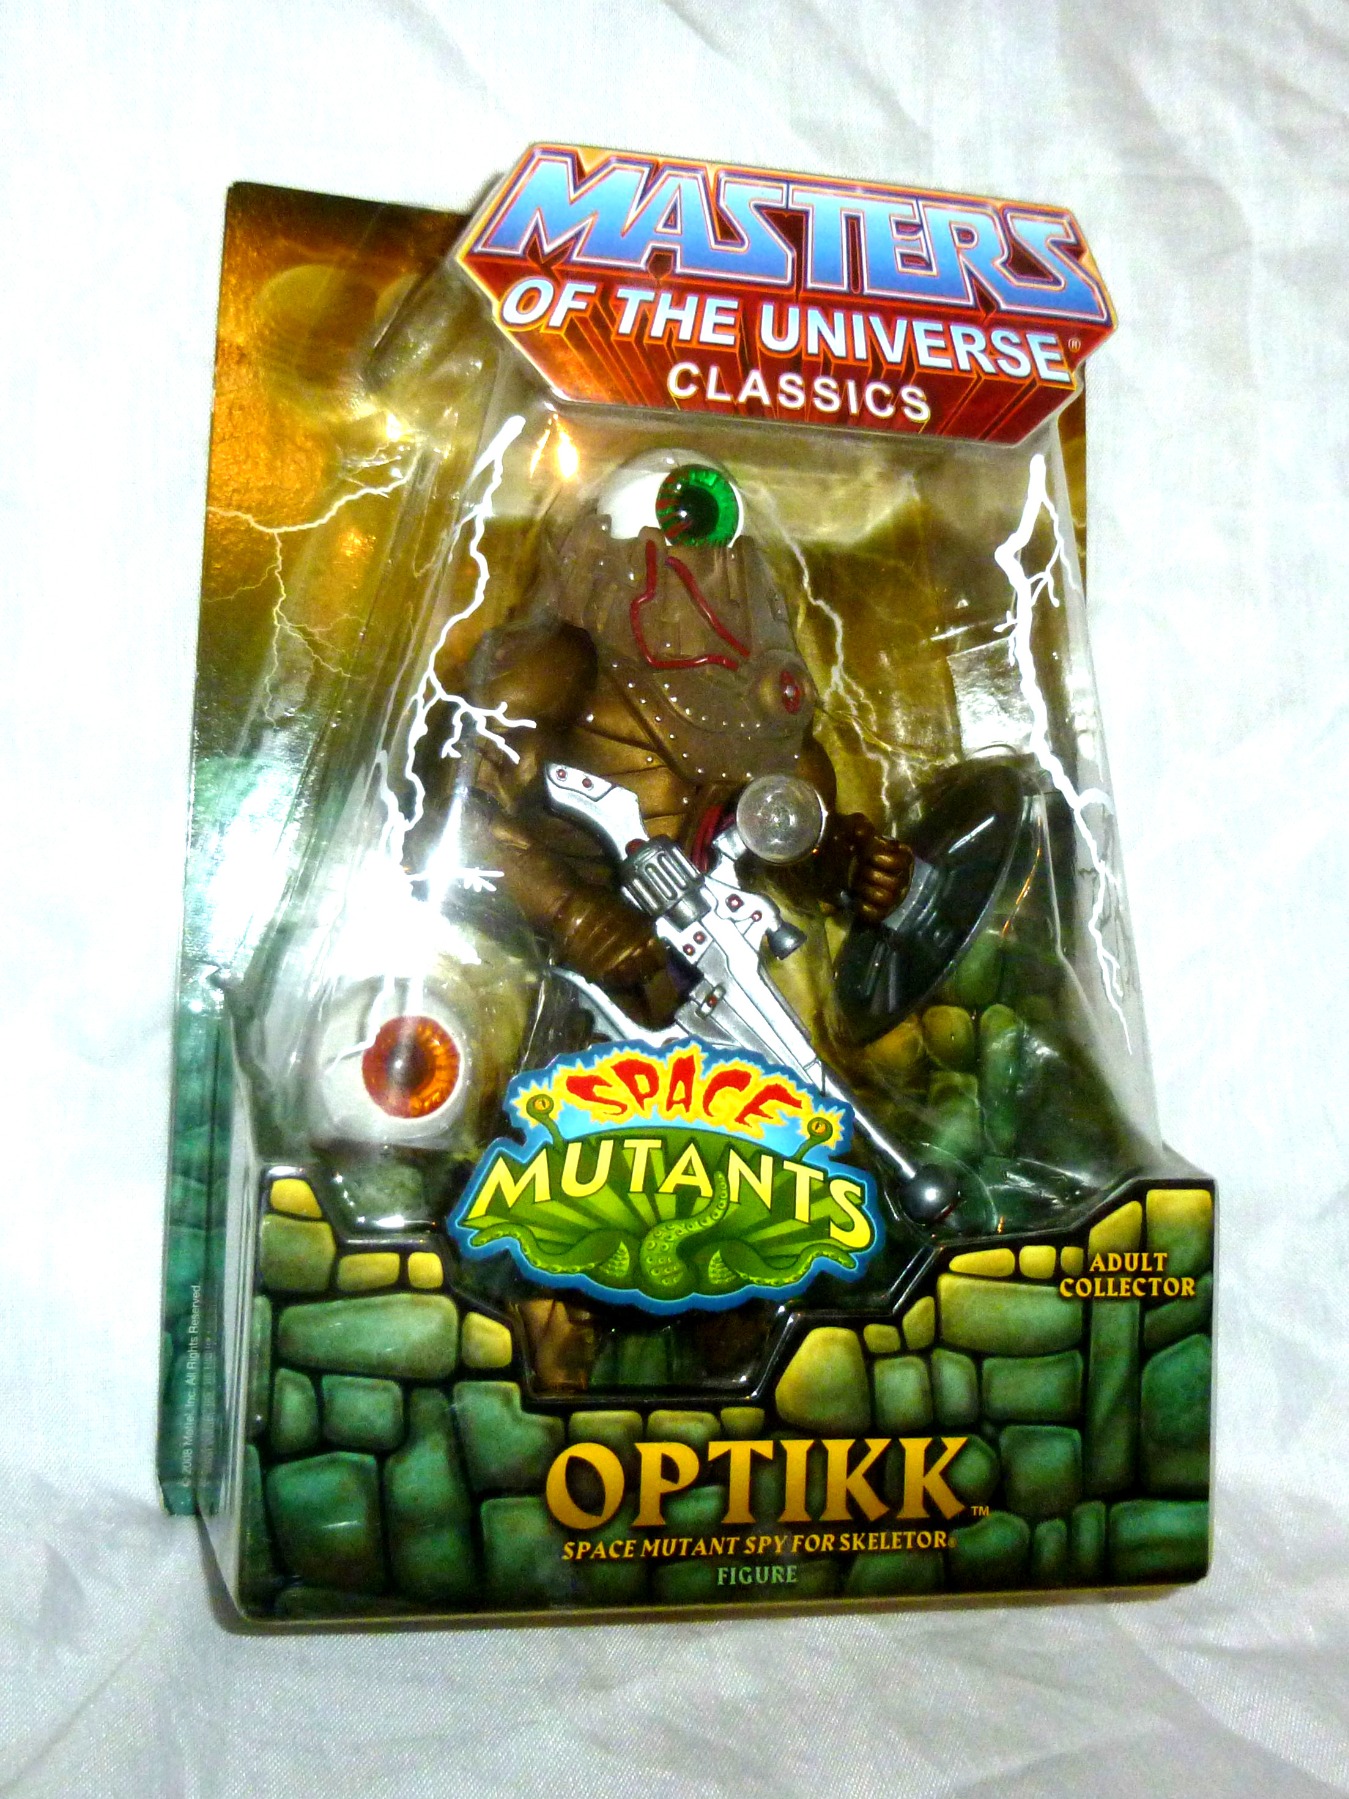 Optikk - Space Mutant Spy for Skeletor 2